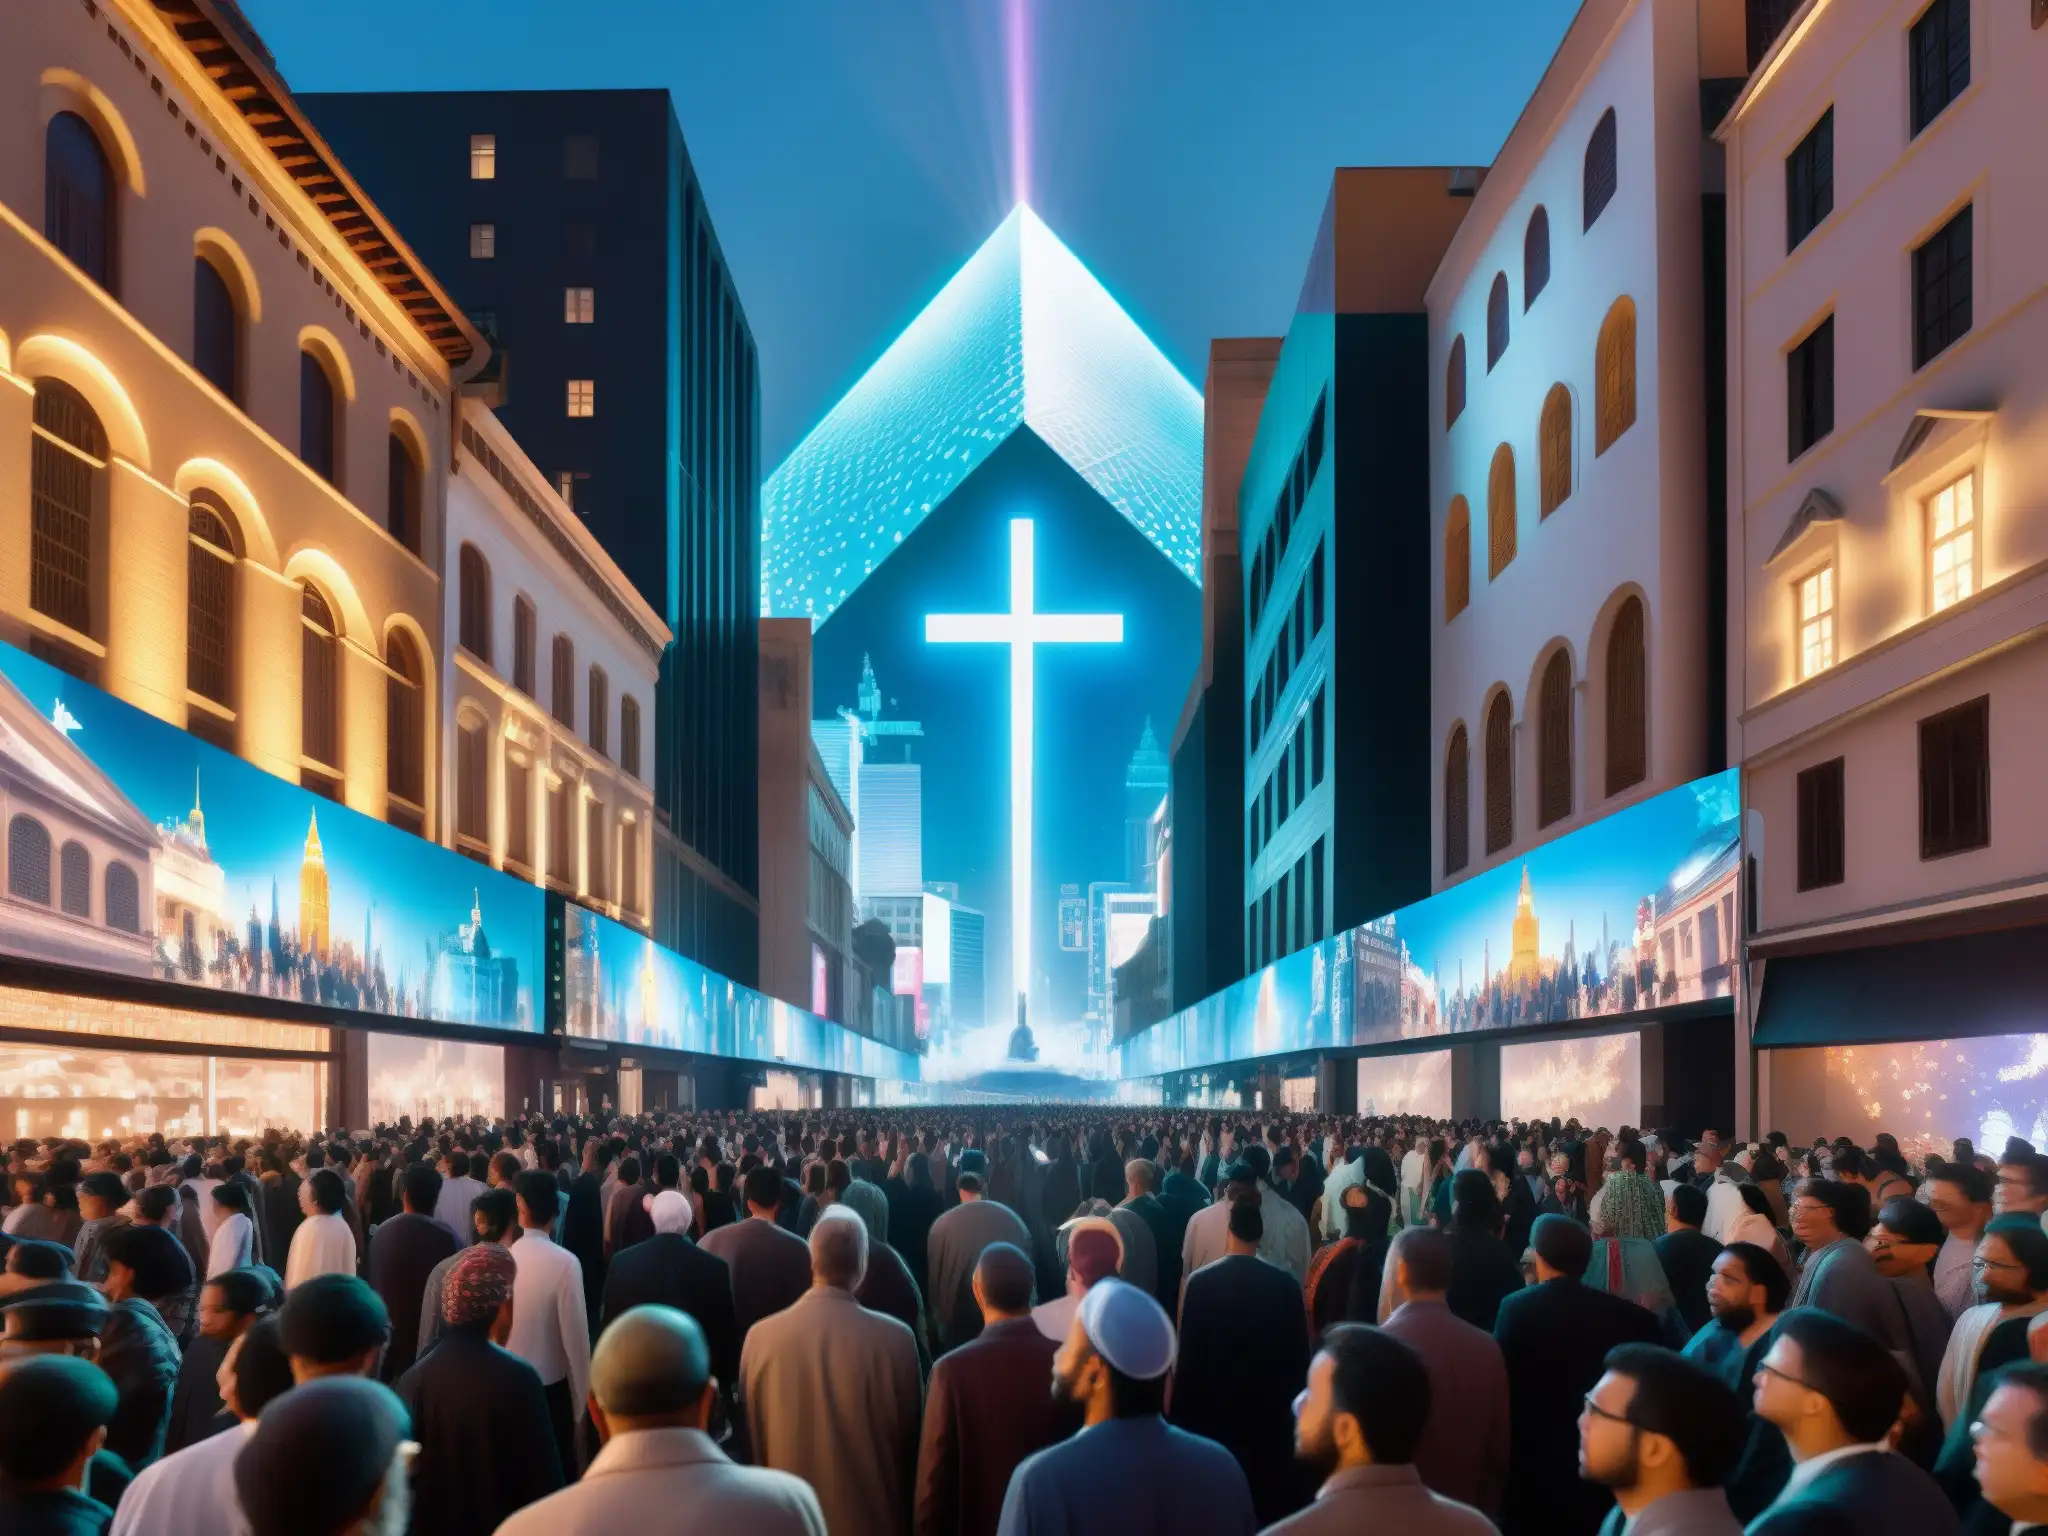 Vista de la ciudad con hologramas religiosos, reflejando la fusión entre tecnología y espiritualidad en el Proyecto Blue Beam